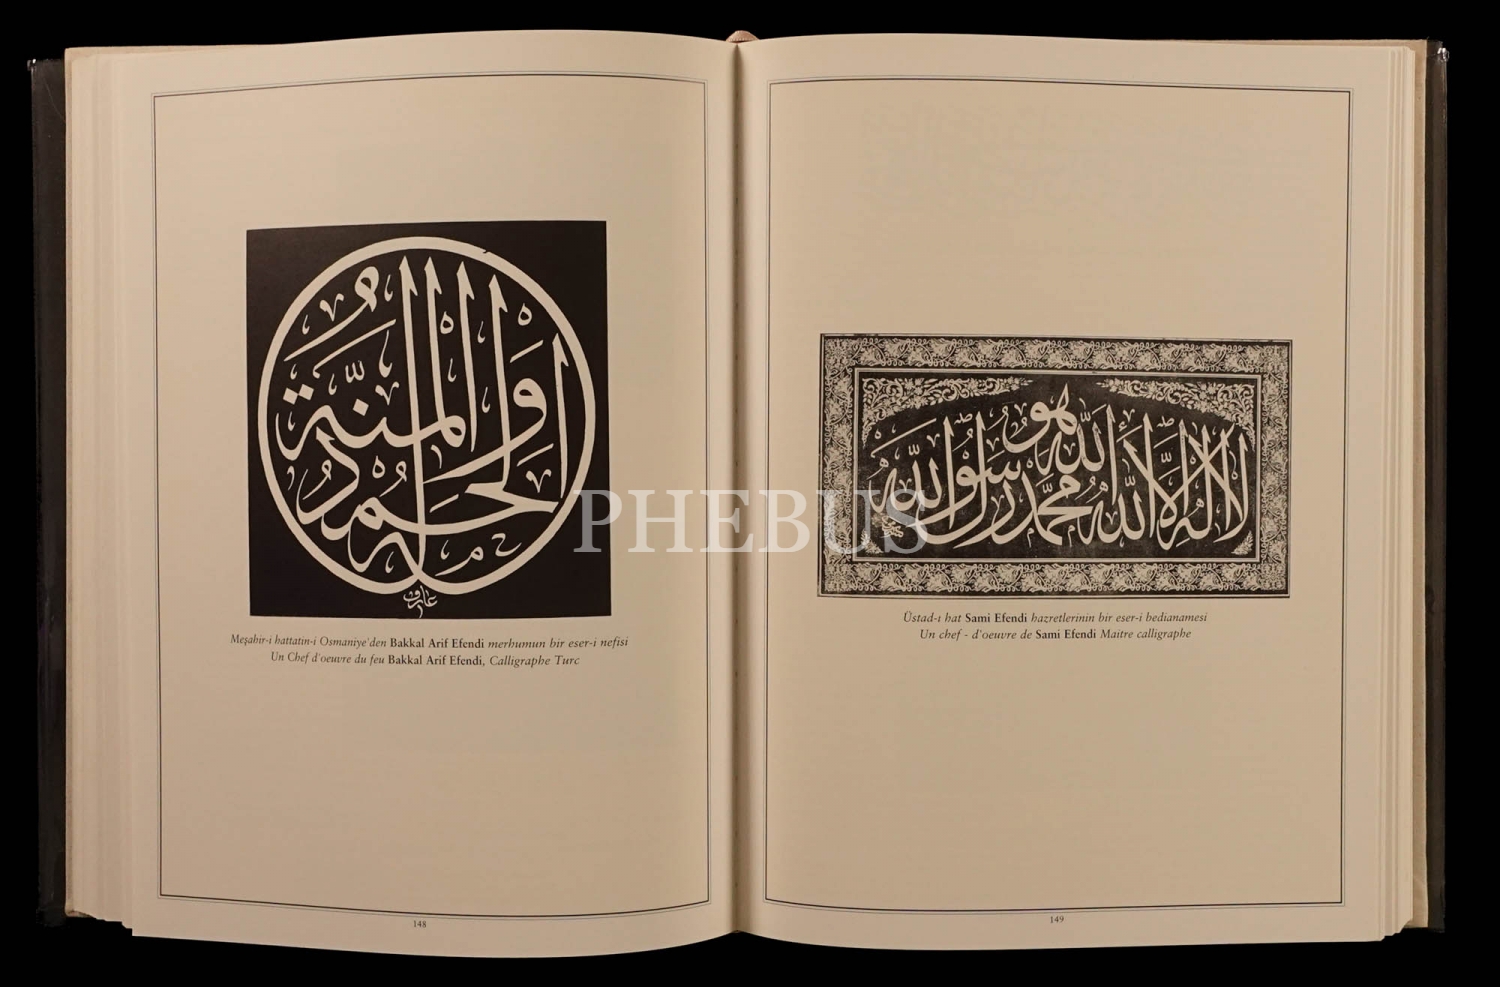 OSMANLI RESSAMLAR CEMİYETİ GAZETESİ (1911-1914), (yayıma hazırlayan: Yaprak Zihnioğlu), 2007, Kitap Yayınevi, 355 sayfa, 25x33 cm...